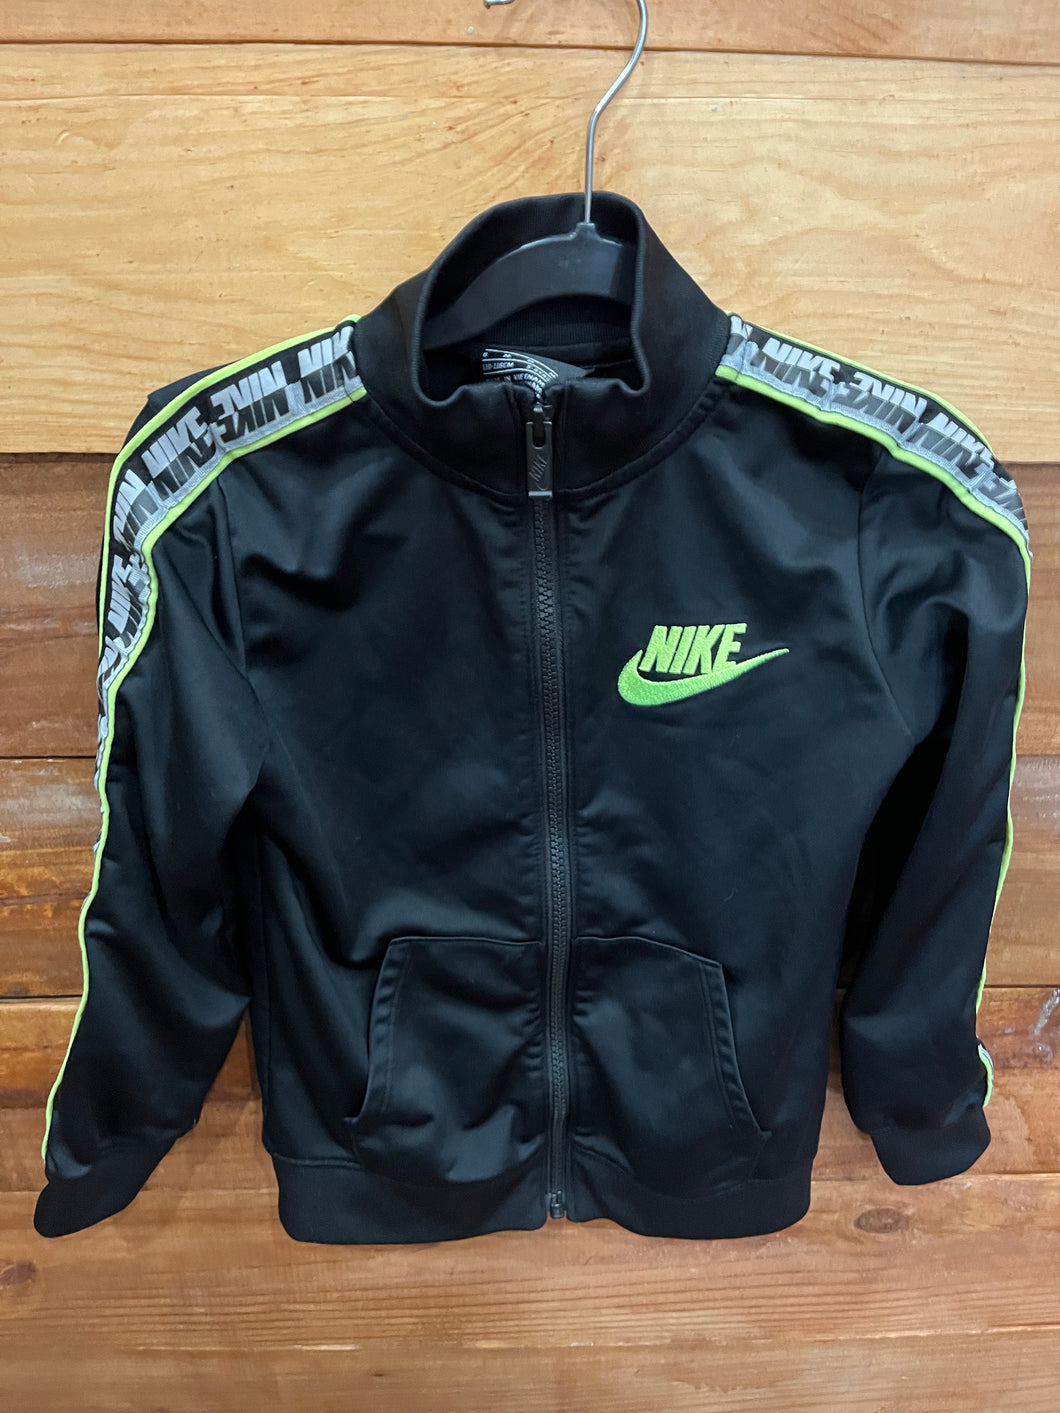 Nike Black Jacket Size 6